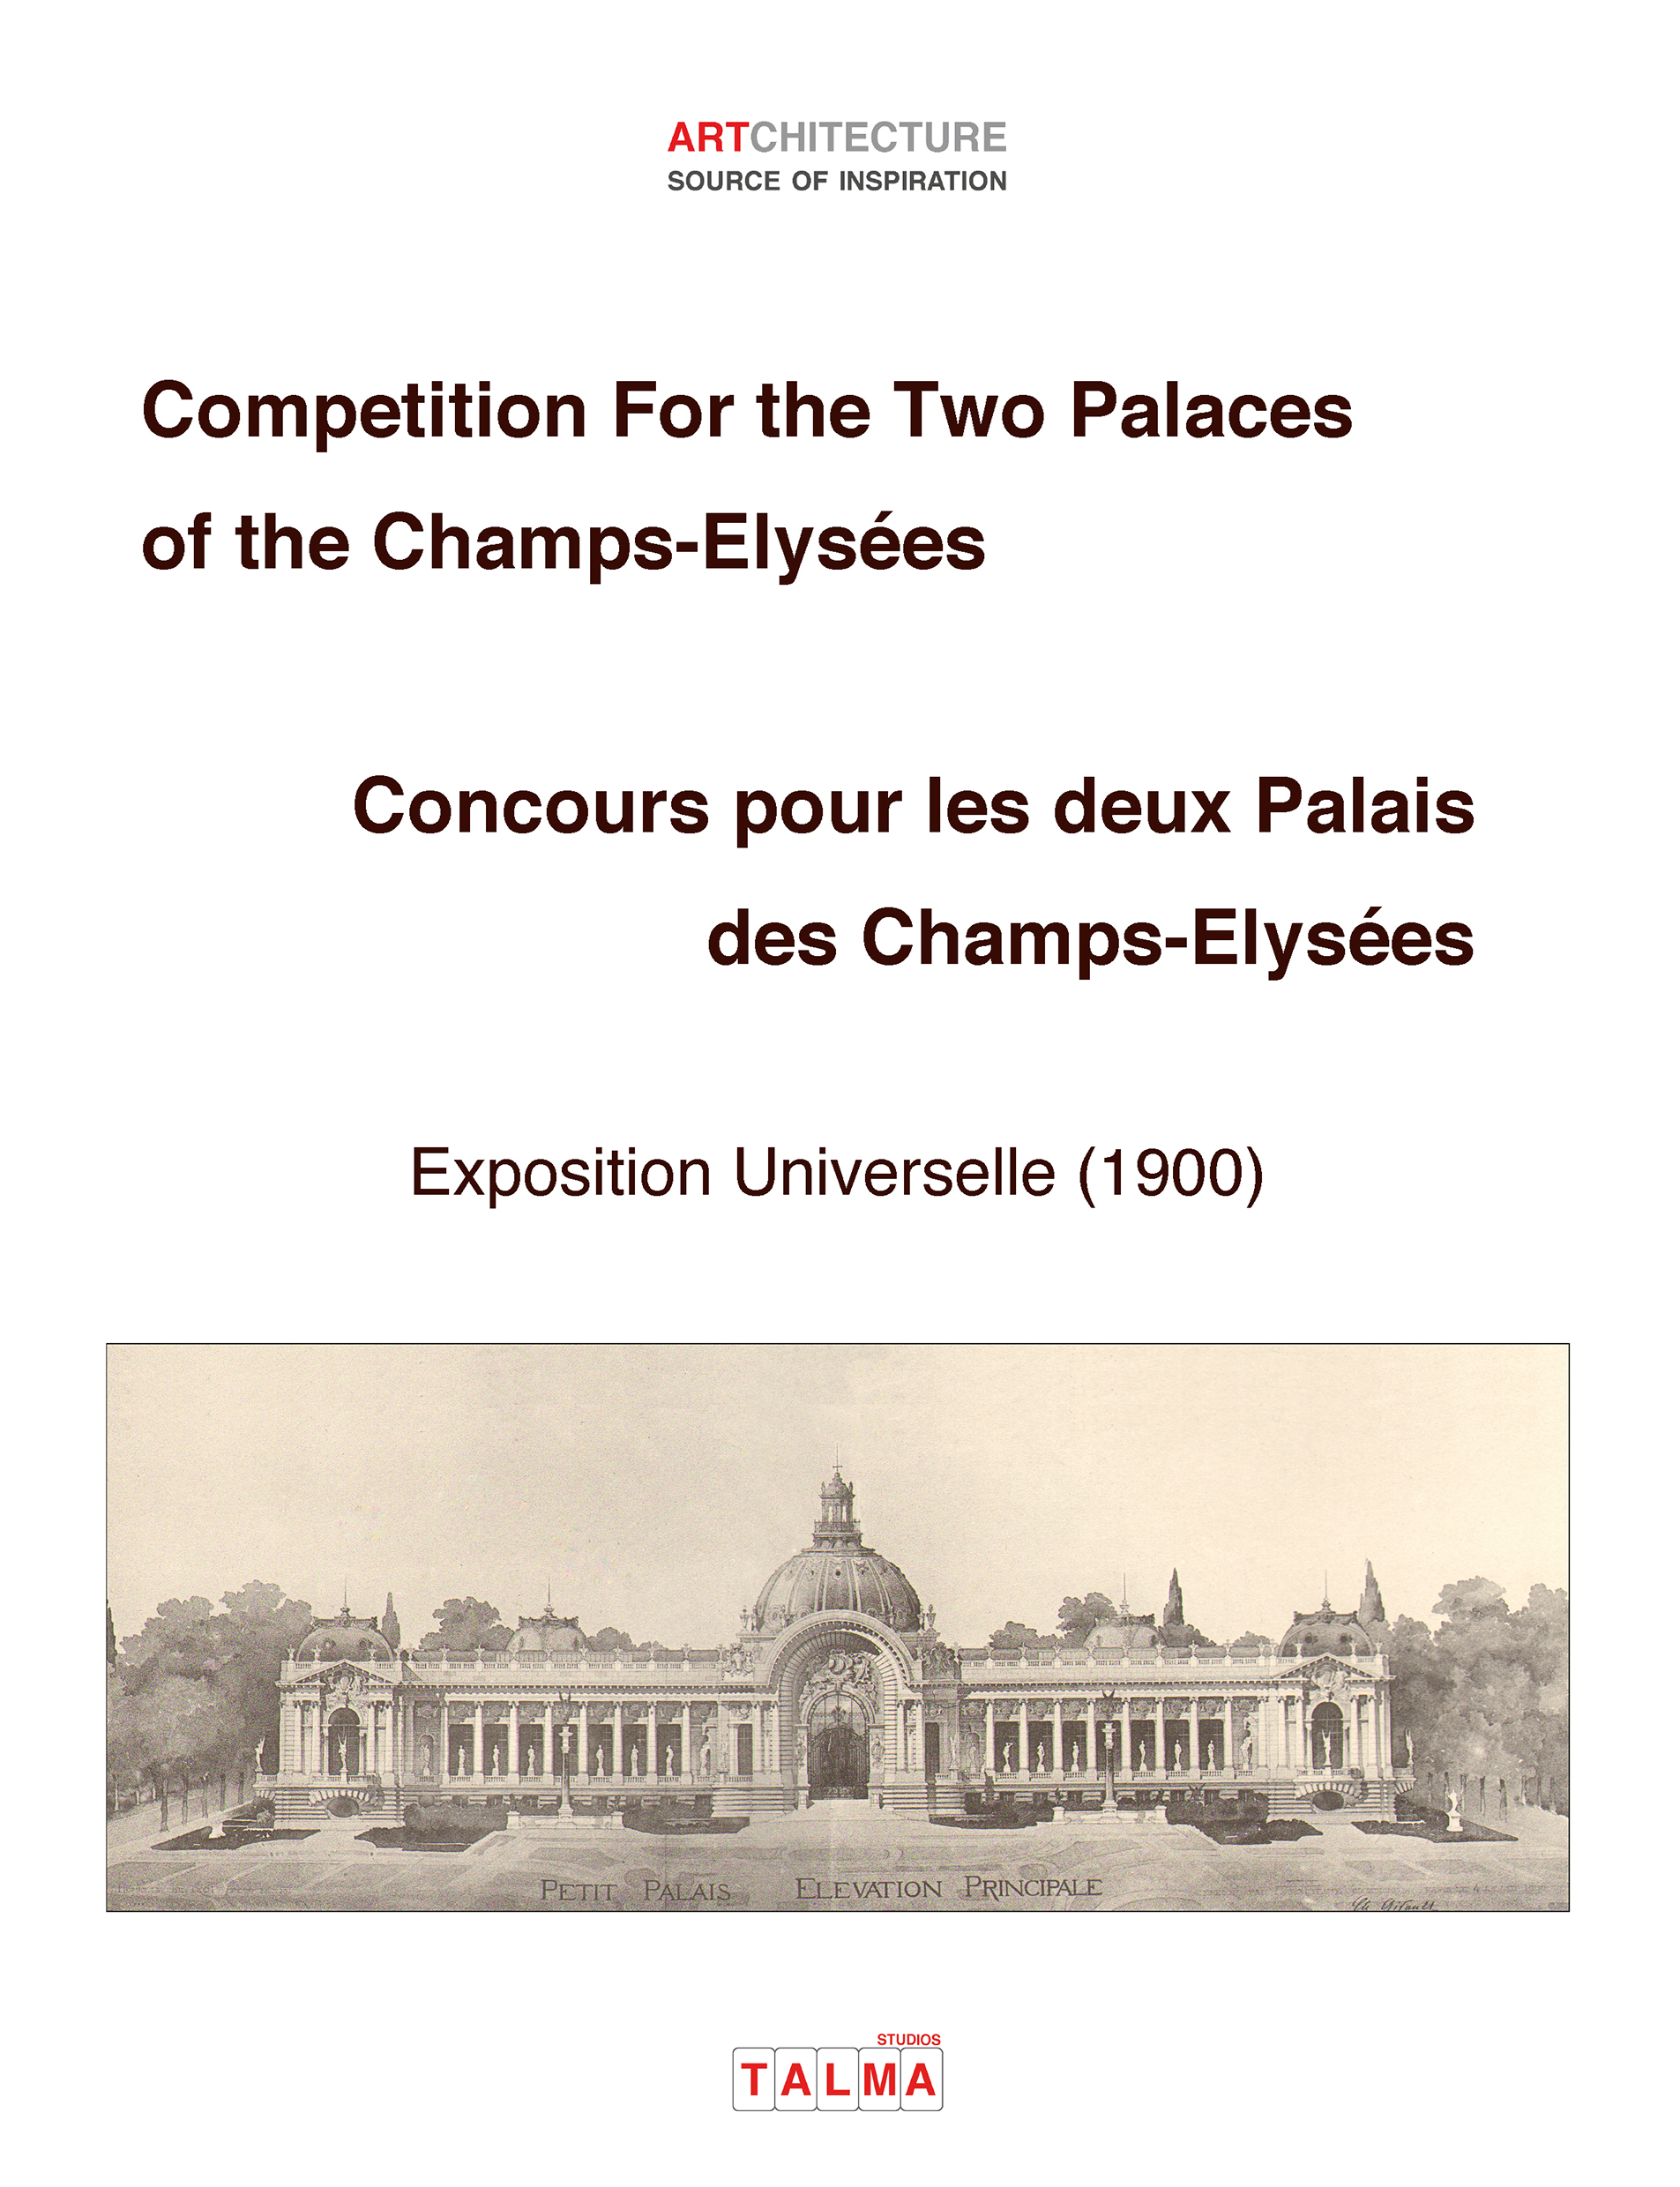 Competition For the Two Palaces of the Champs-Elysées – Concours pour les deux Palais des Champs-Elysées (Exposition universelle 1900)